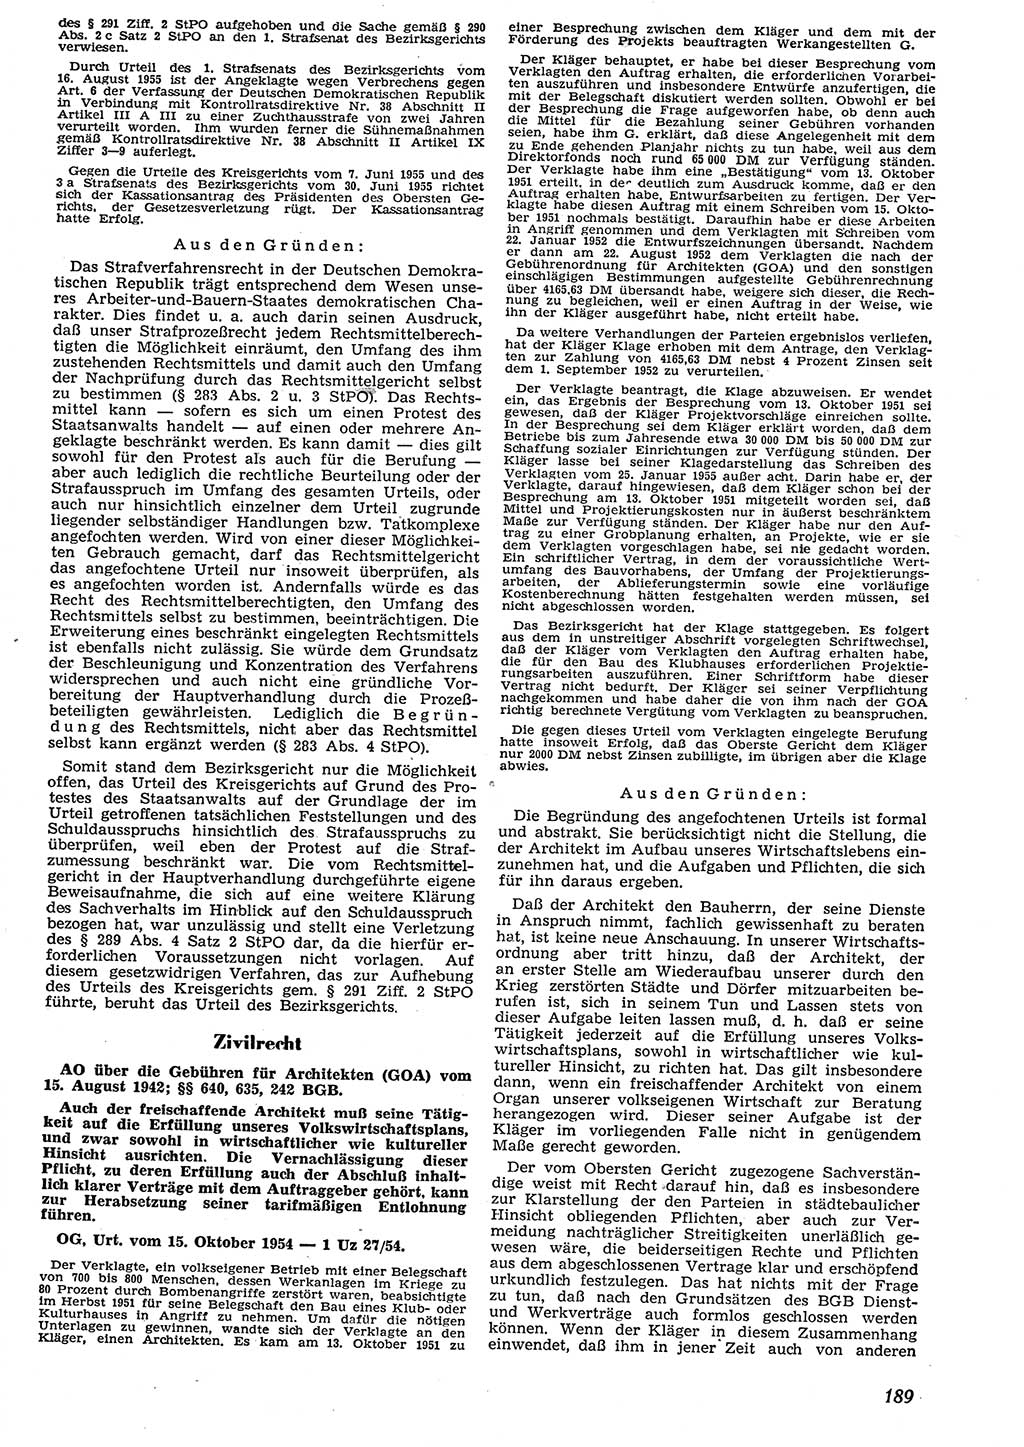 Neue Justiz (NJ), Zeitschrift für Recht und Rechtswissenschaft [Deutsche Demokratische Republik (DDR)], 10. Jahrgang 1956, Seite 189 (NJ DDR 1956, S. 189)